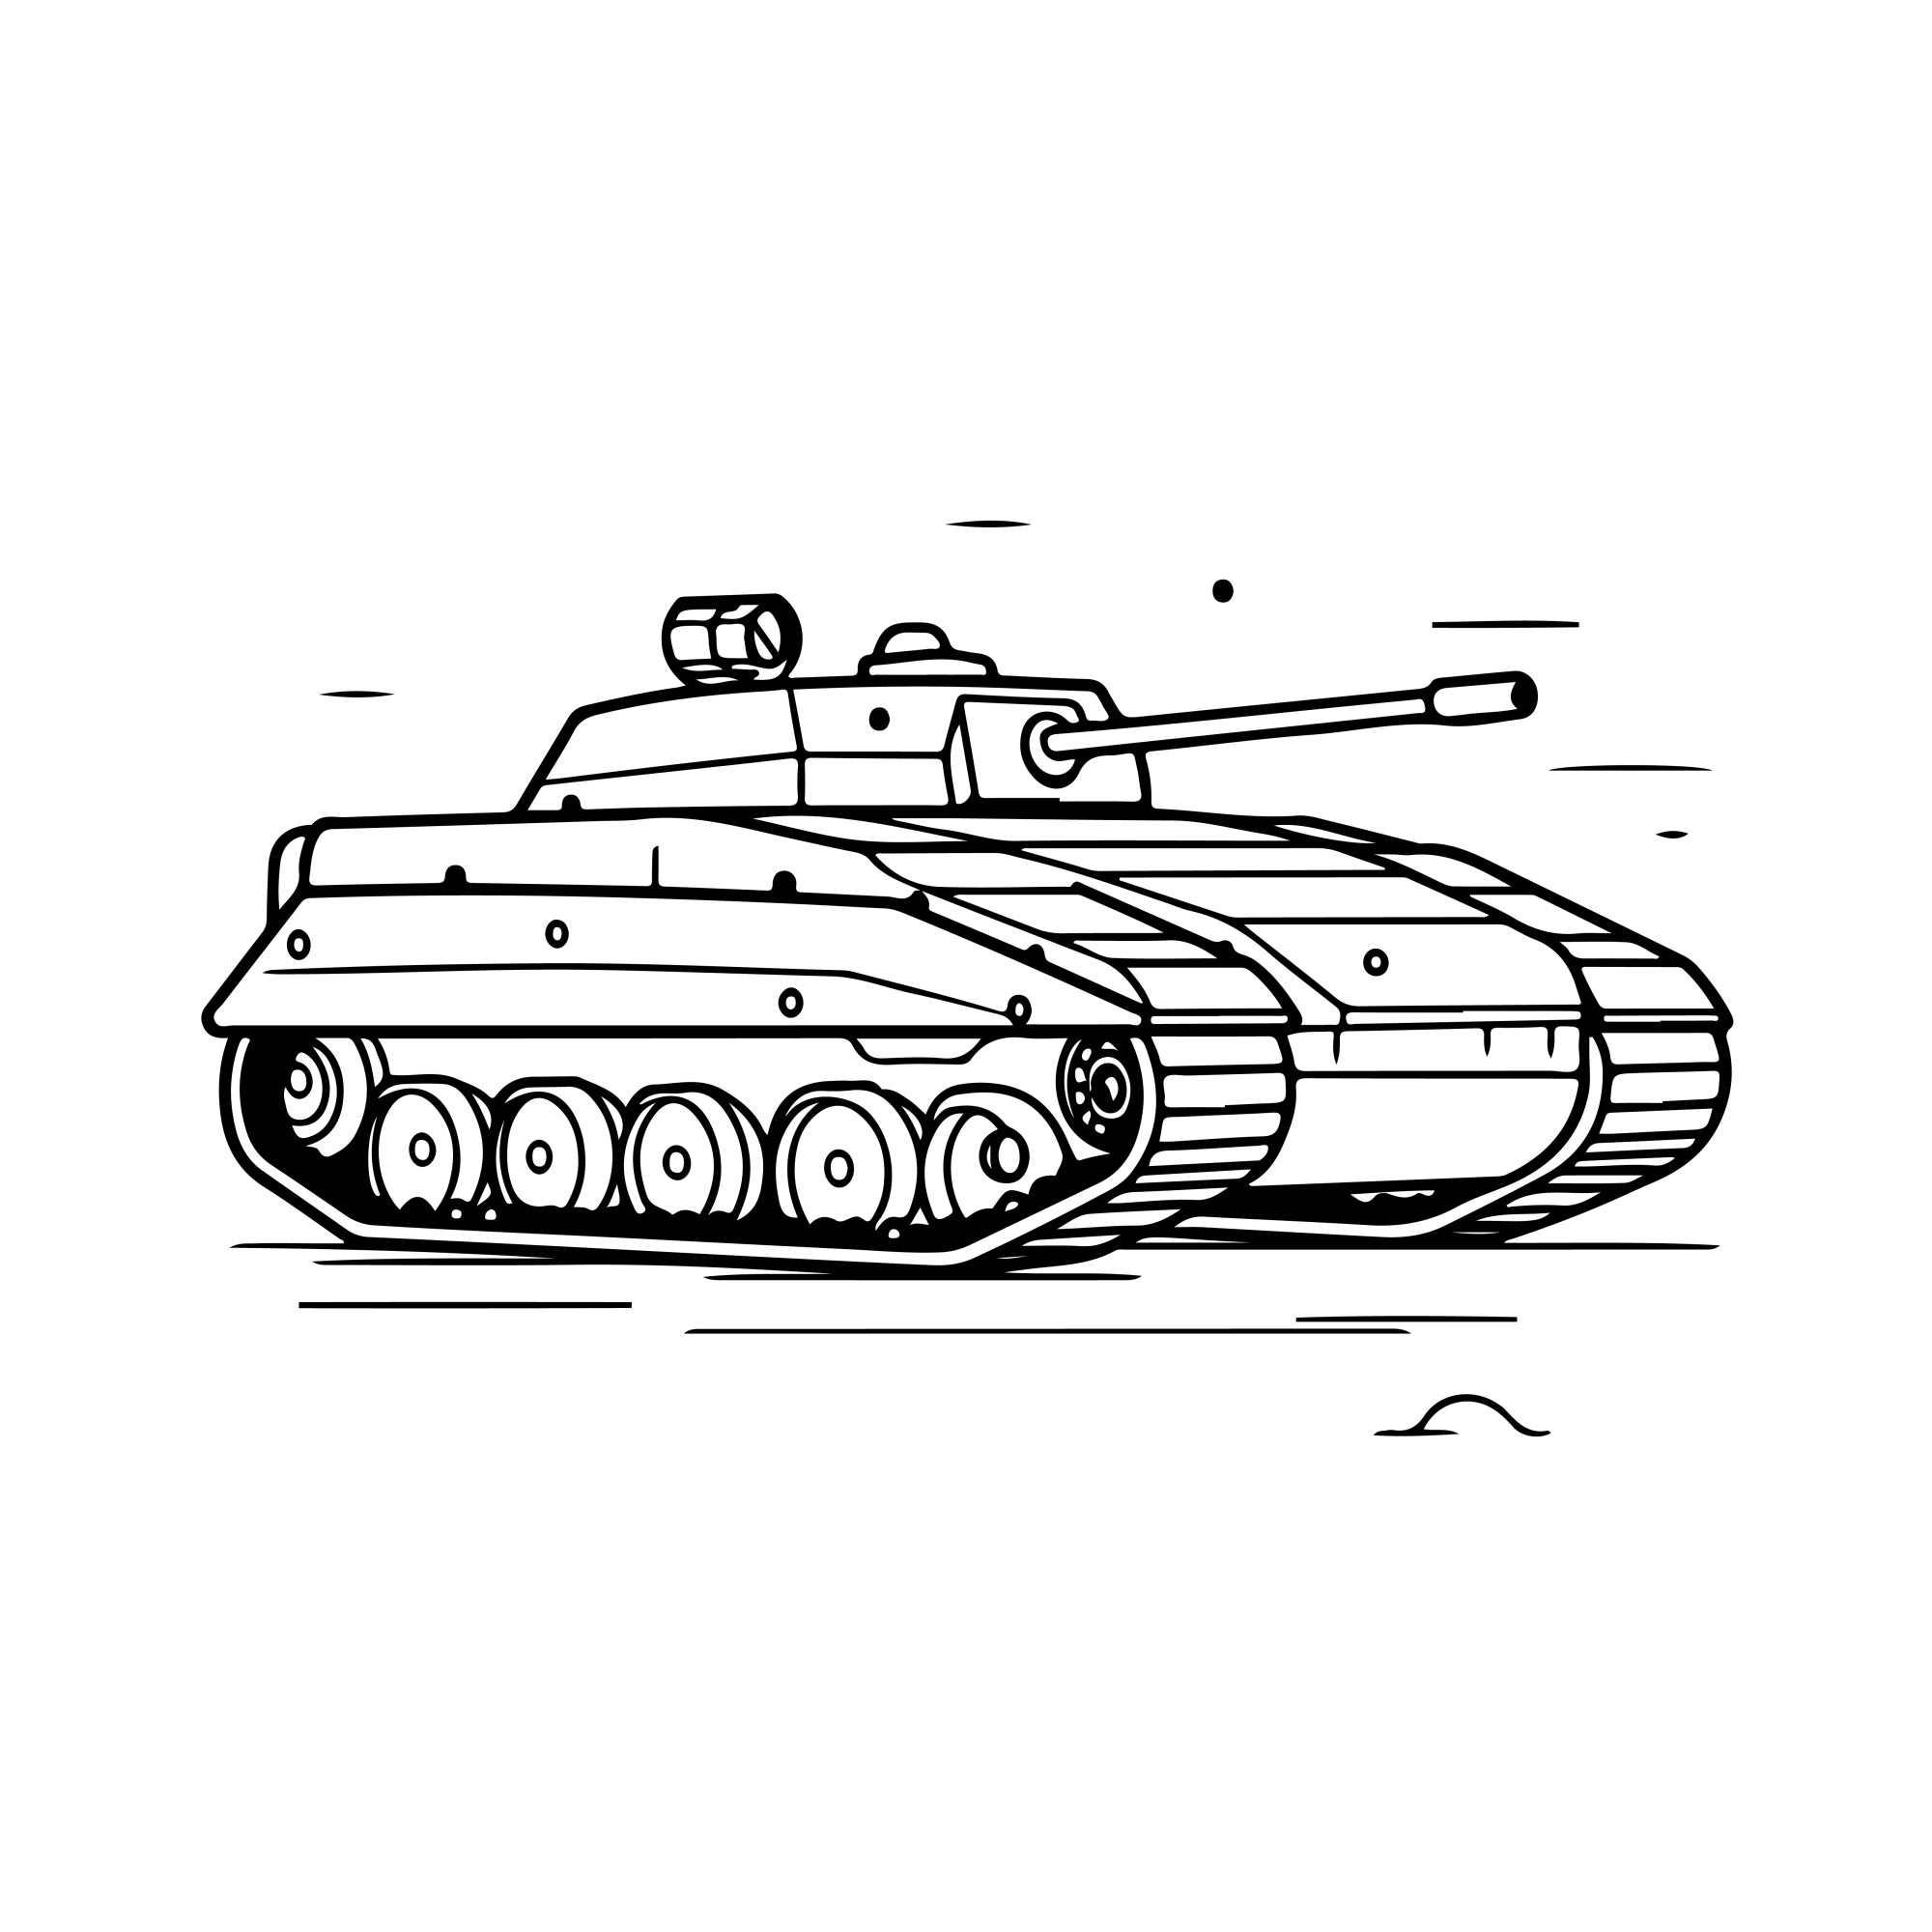 Раскраска для детей: танк «Стальной воин на гусеницах»